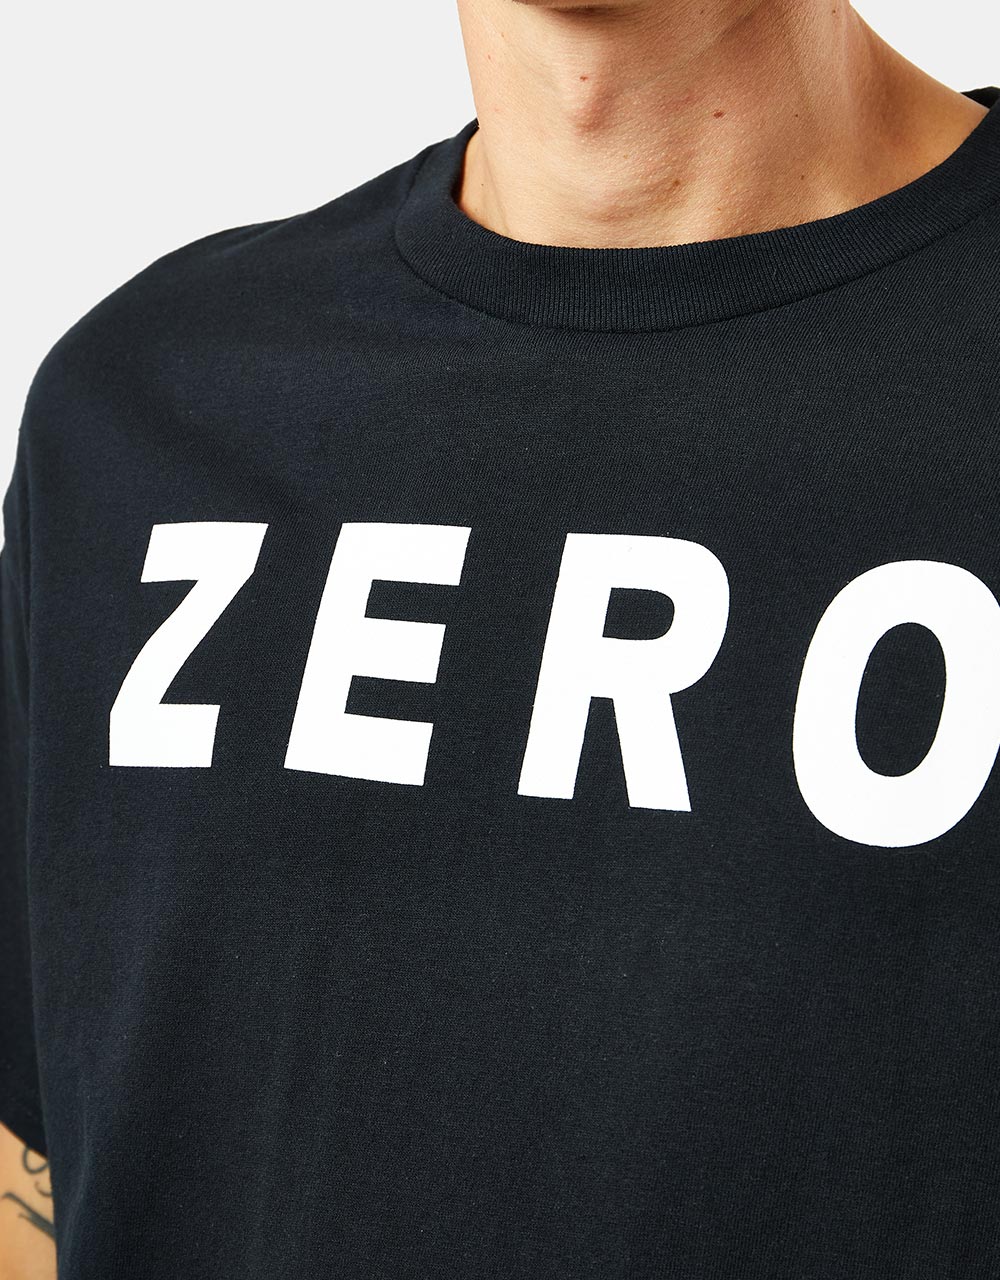 Zero Army T-Shirt - Black/White